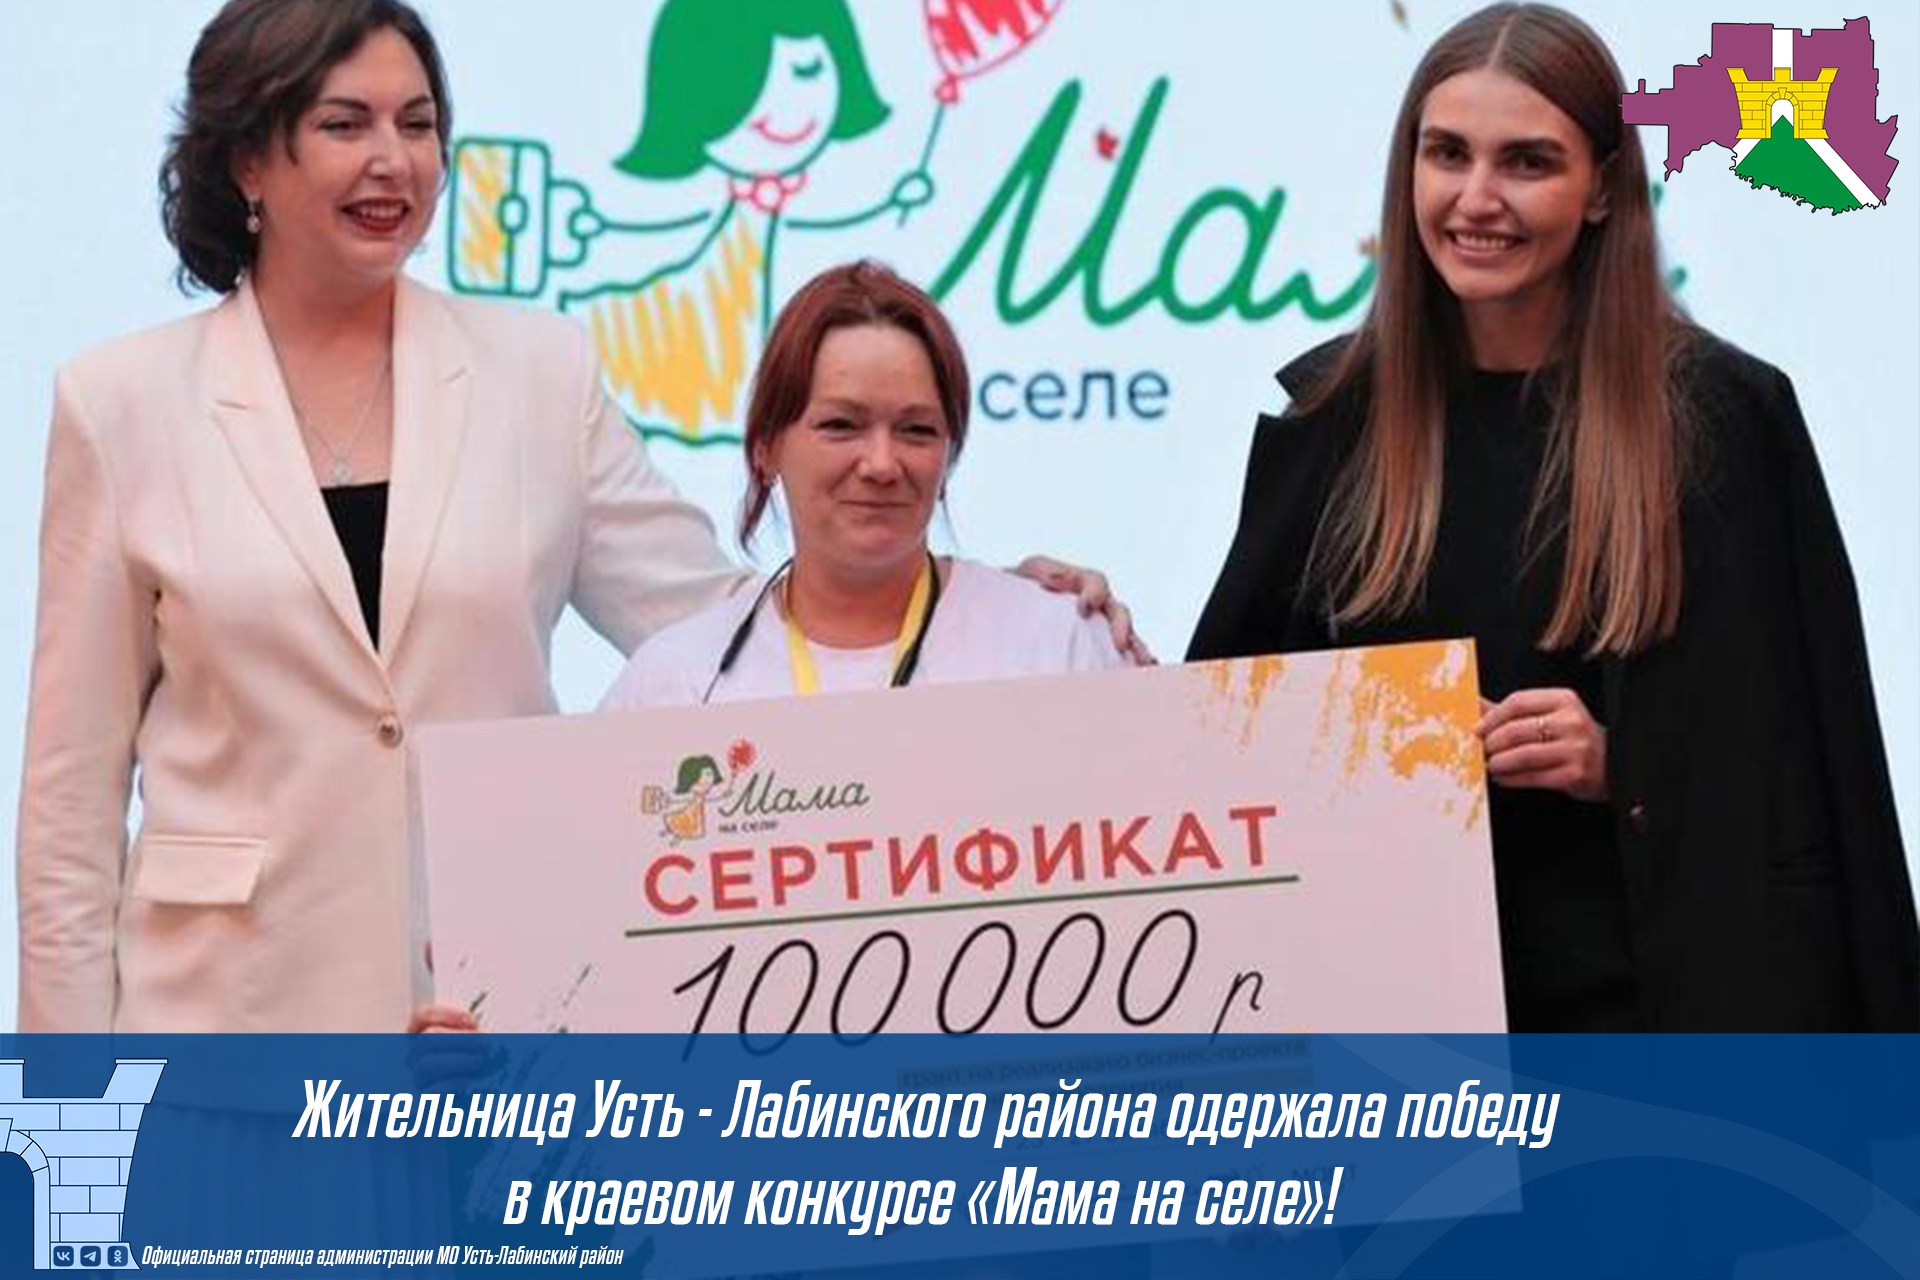 Жительница Усть - лабинского района одержала победу в краевом конкурсе "Мама на селе"!